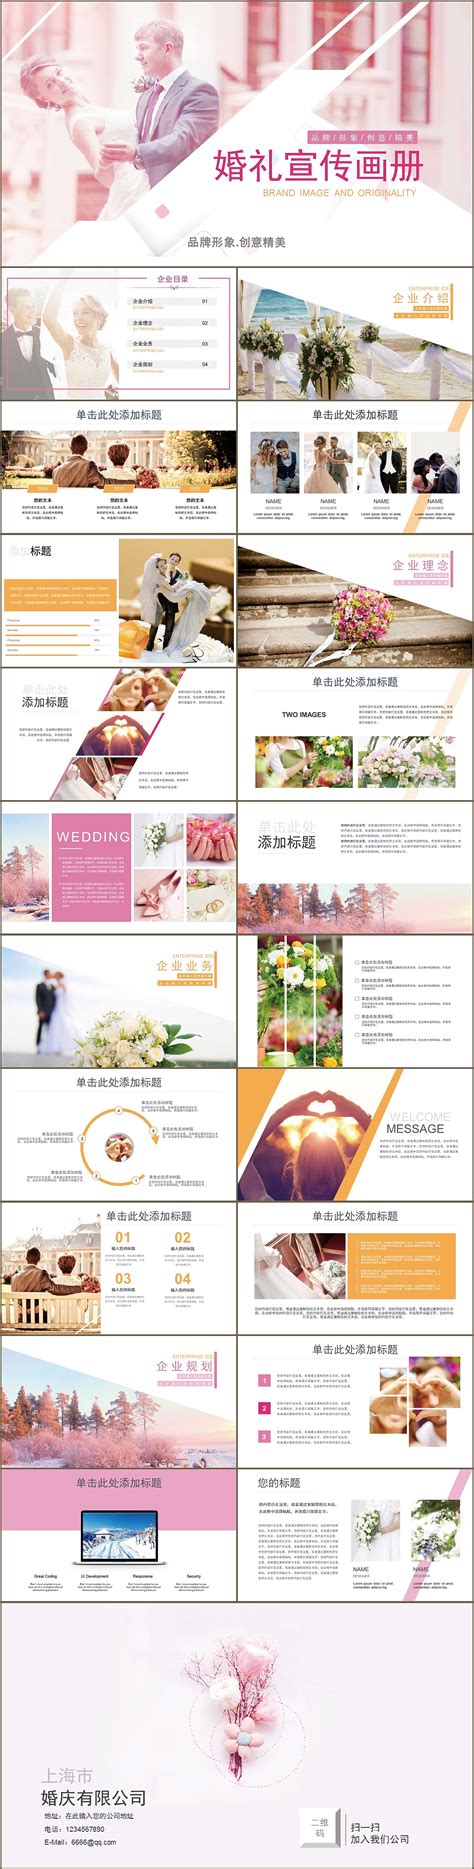 婚庆公司服务流程 有哪些内容 - 中国婚博会官网